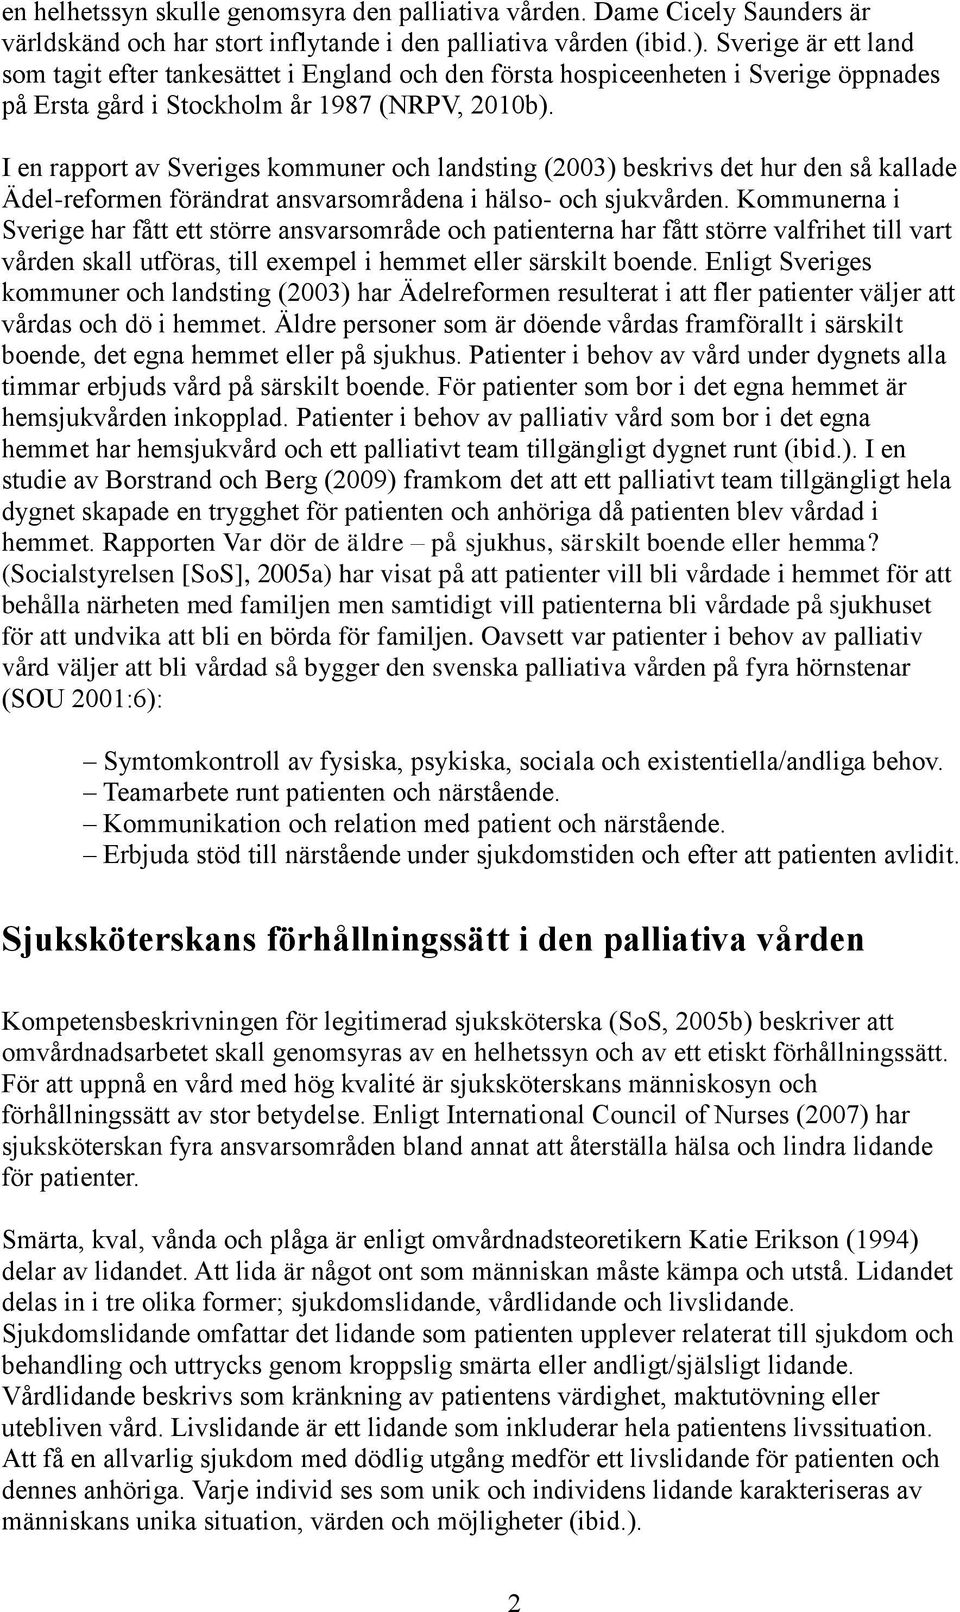 I en rapport av Sveriges kommuner och landsting (2003) beskrivs det hur den så kallade Ädel-reformen förändrat ansvarsområdena i hälso- och sjukvården.